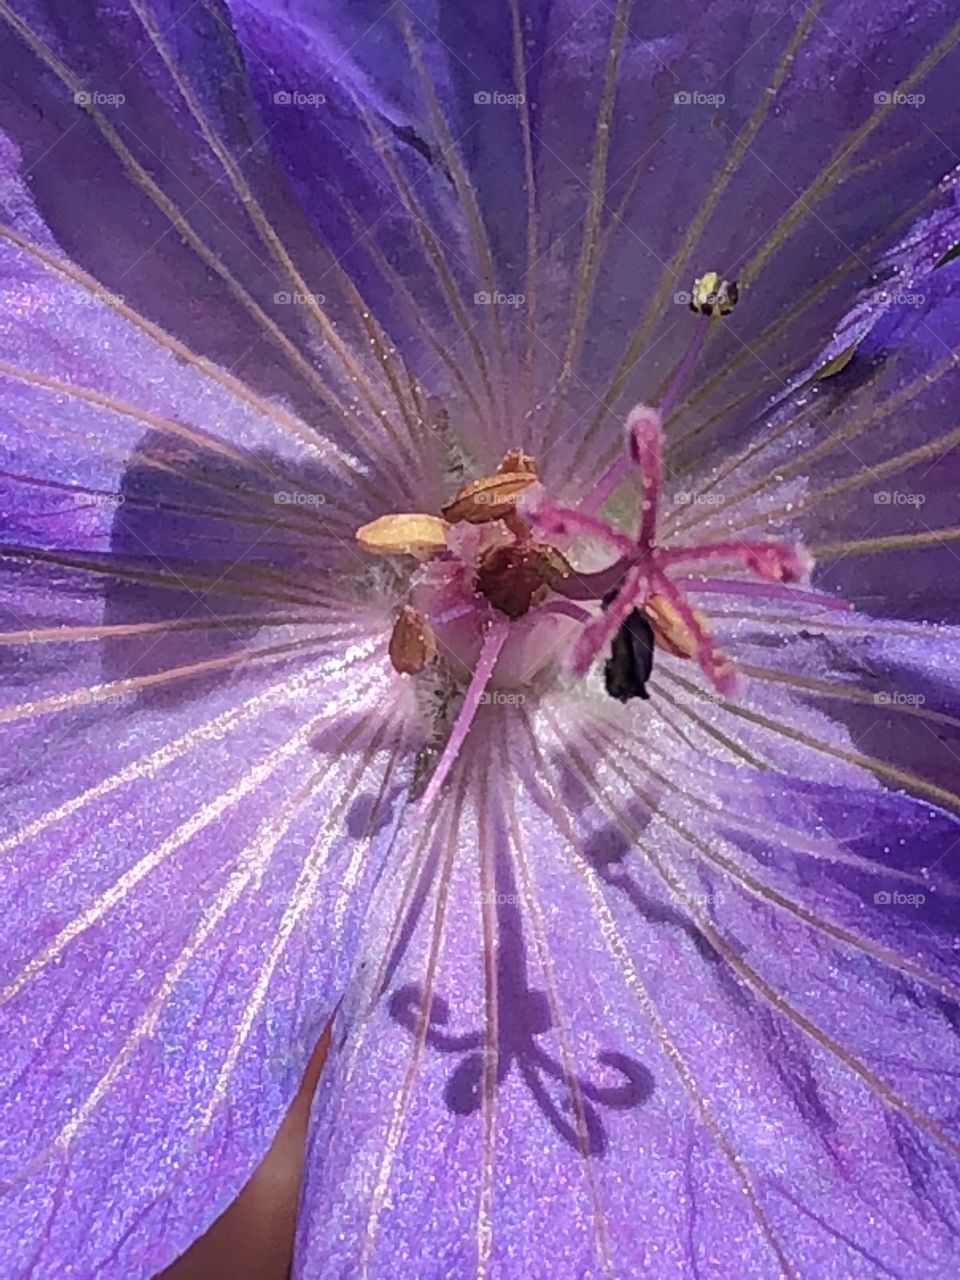 Macro photography- inside purple flower - pollen